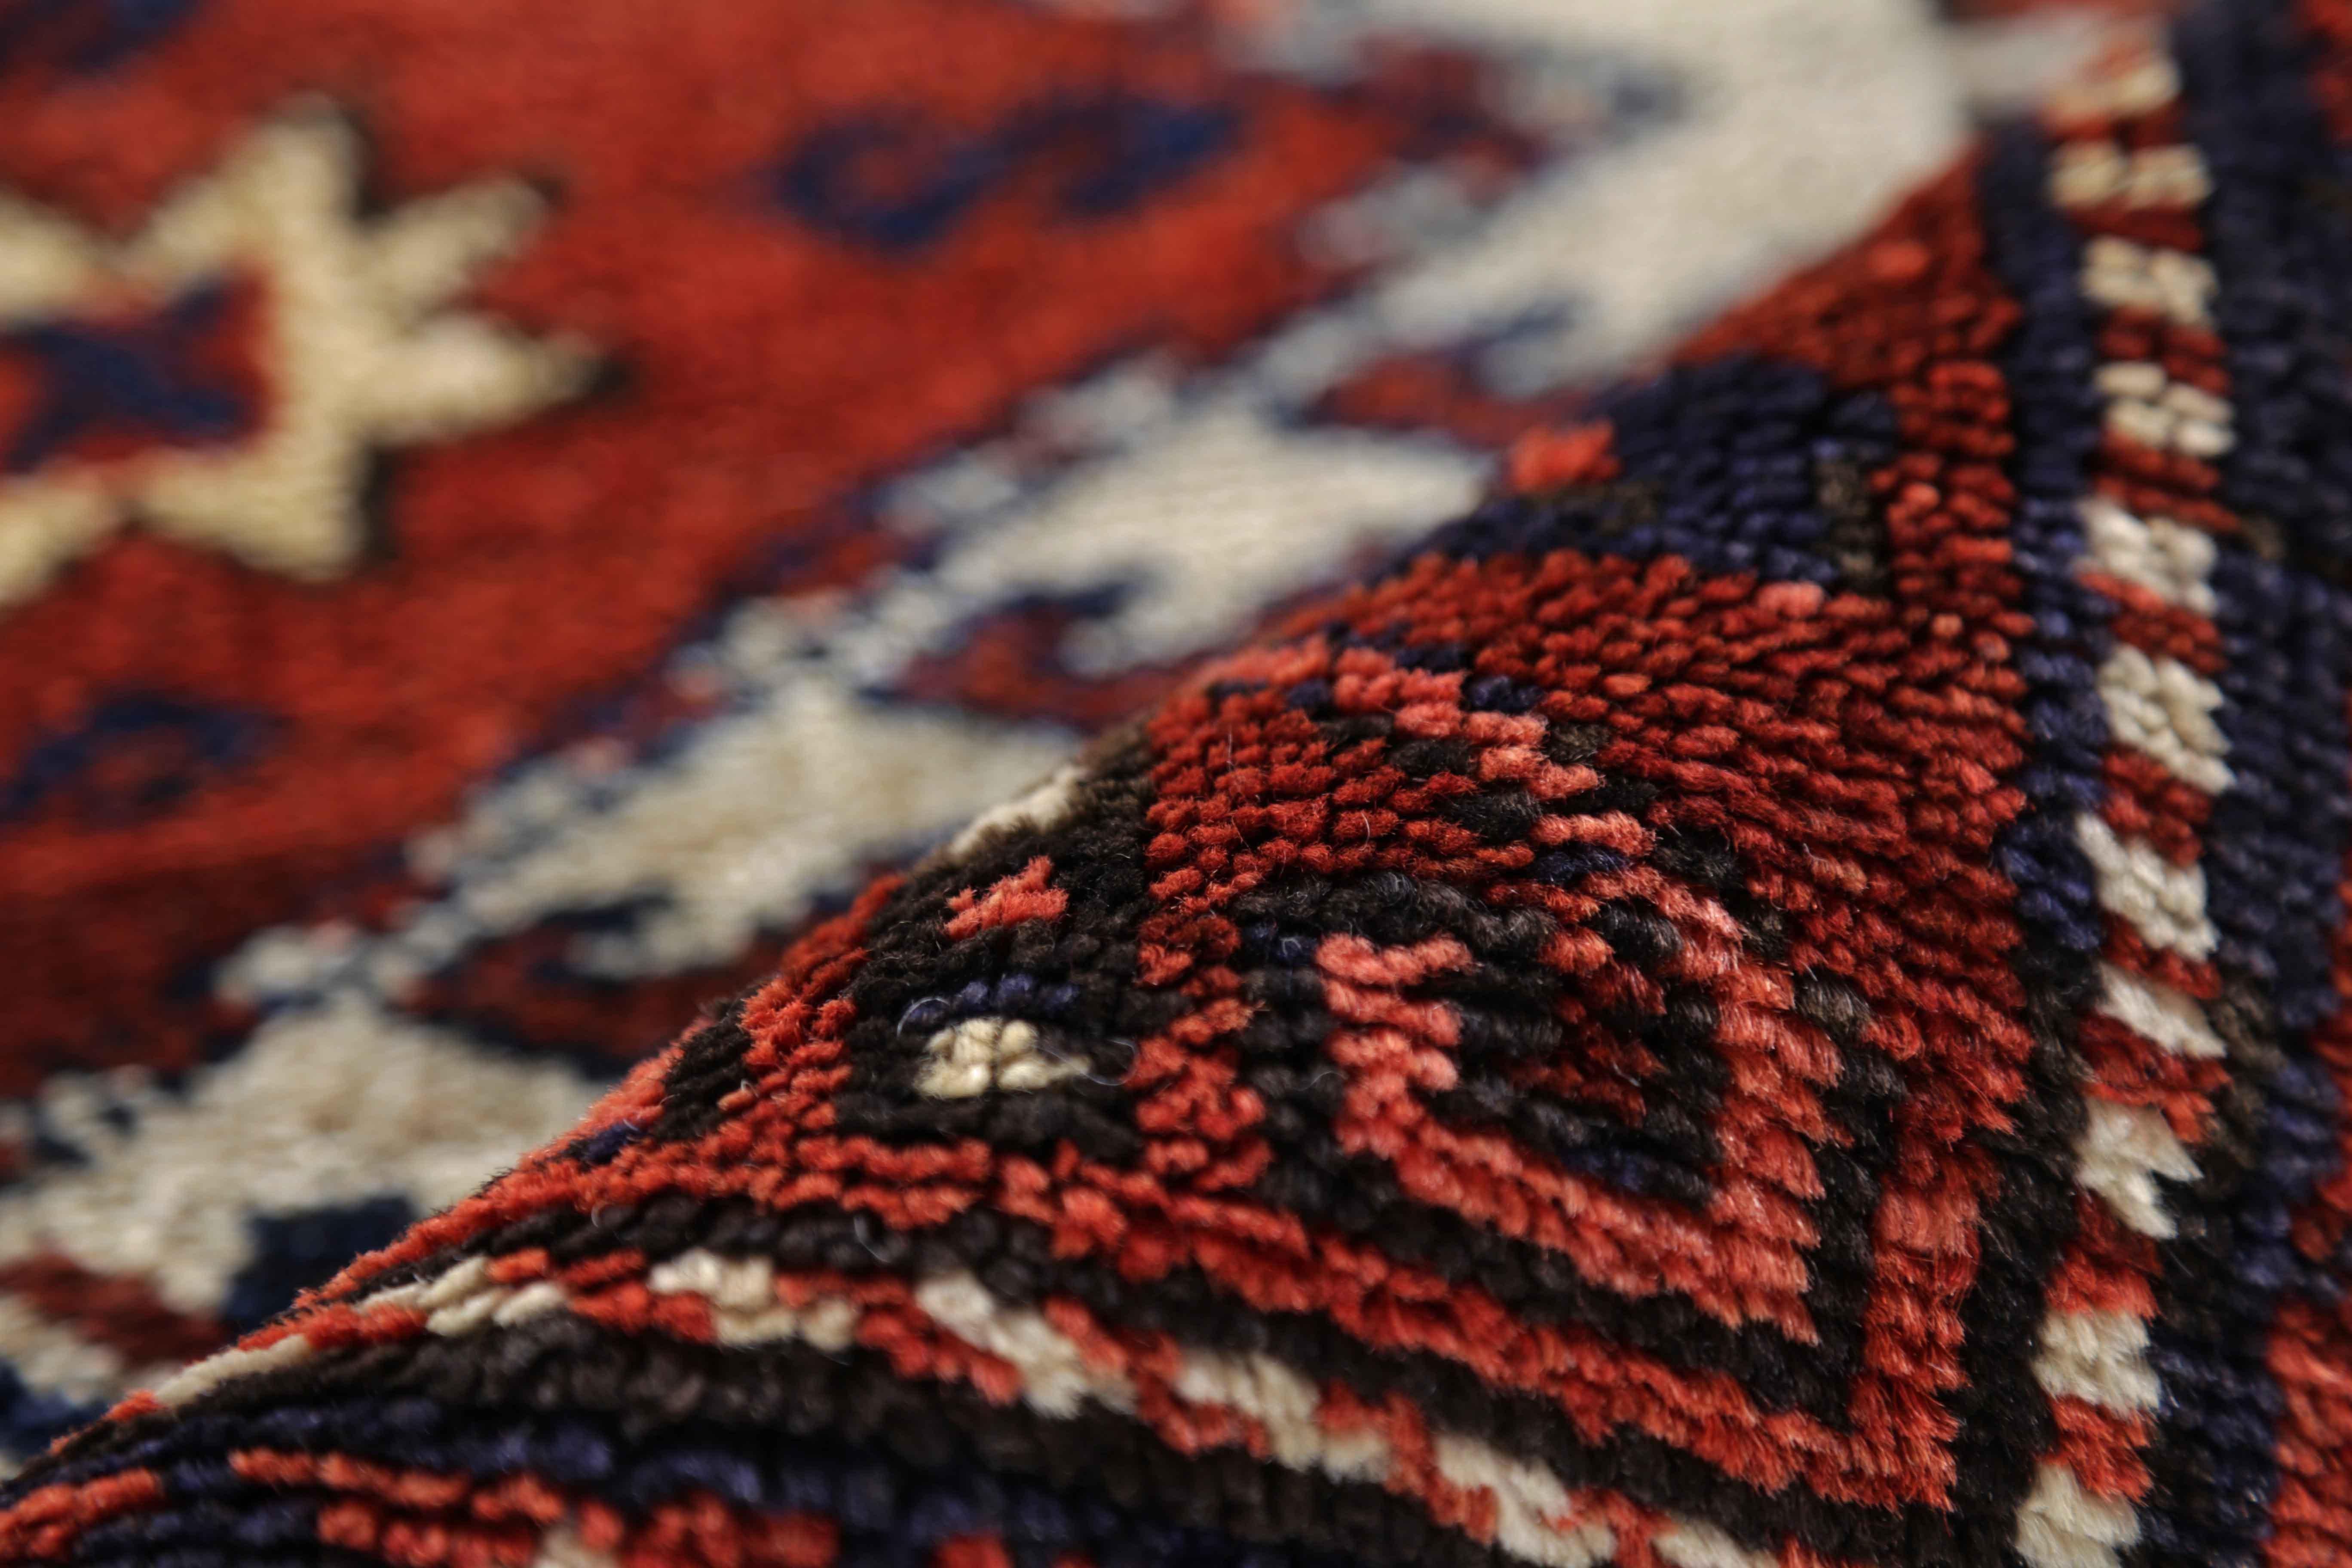 Antique Persian Area Rug Azerbaijan Design In Excellent Condition For Sale In Dallas, TX